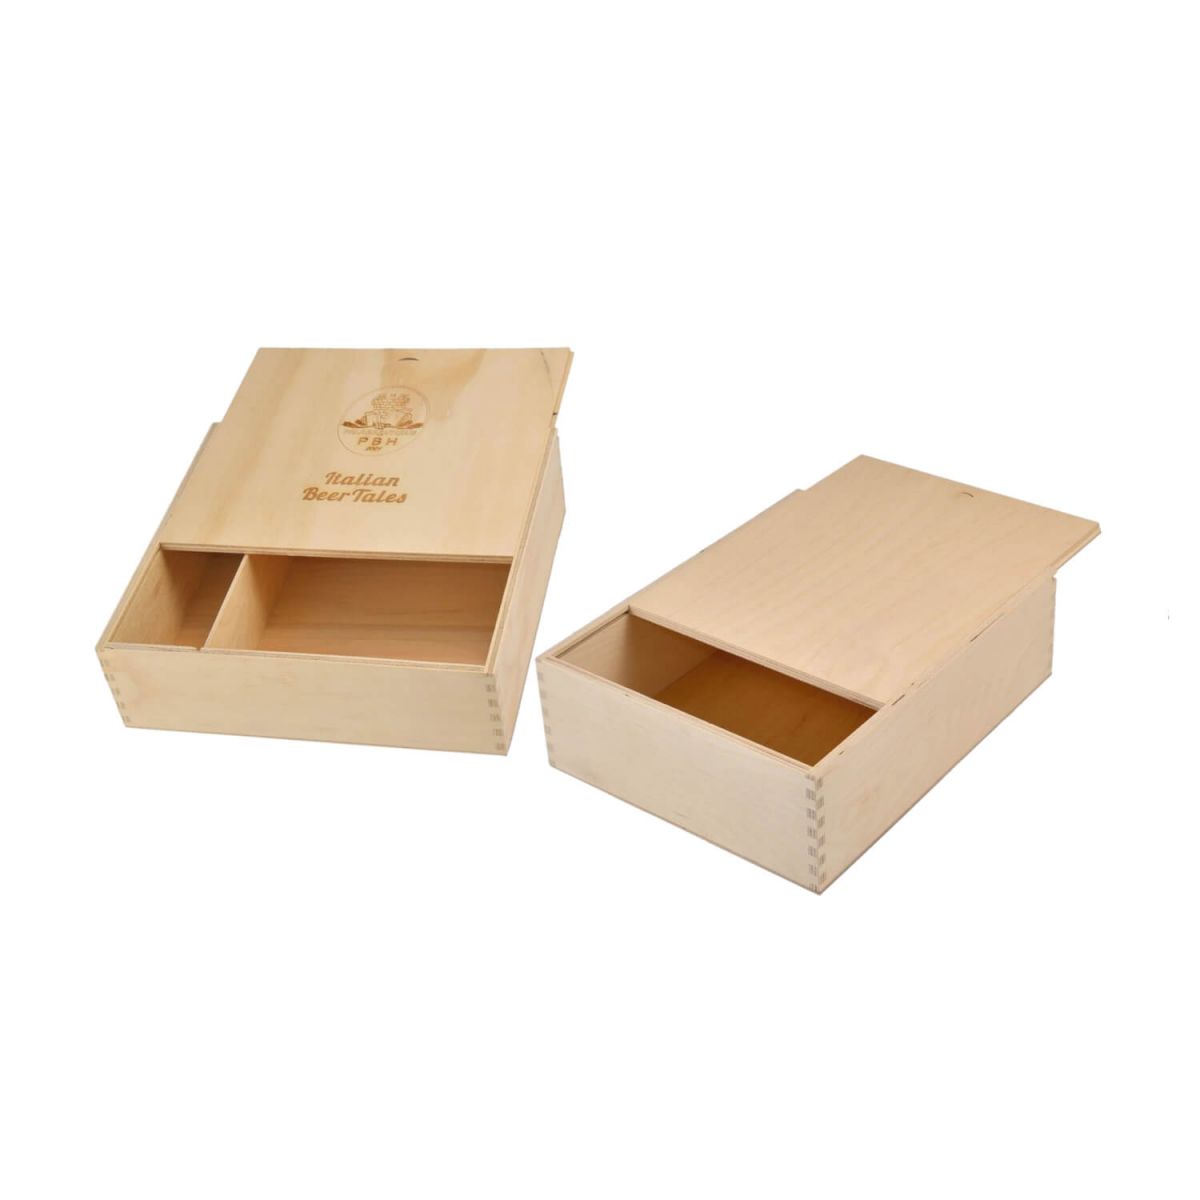 Casse in legno per confezione - cassa campione per prova